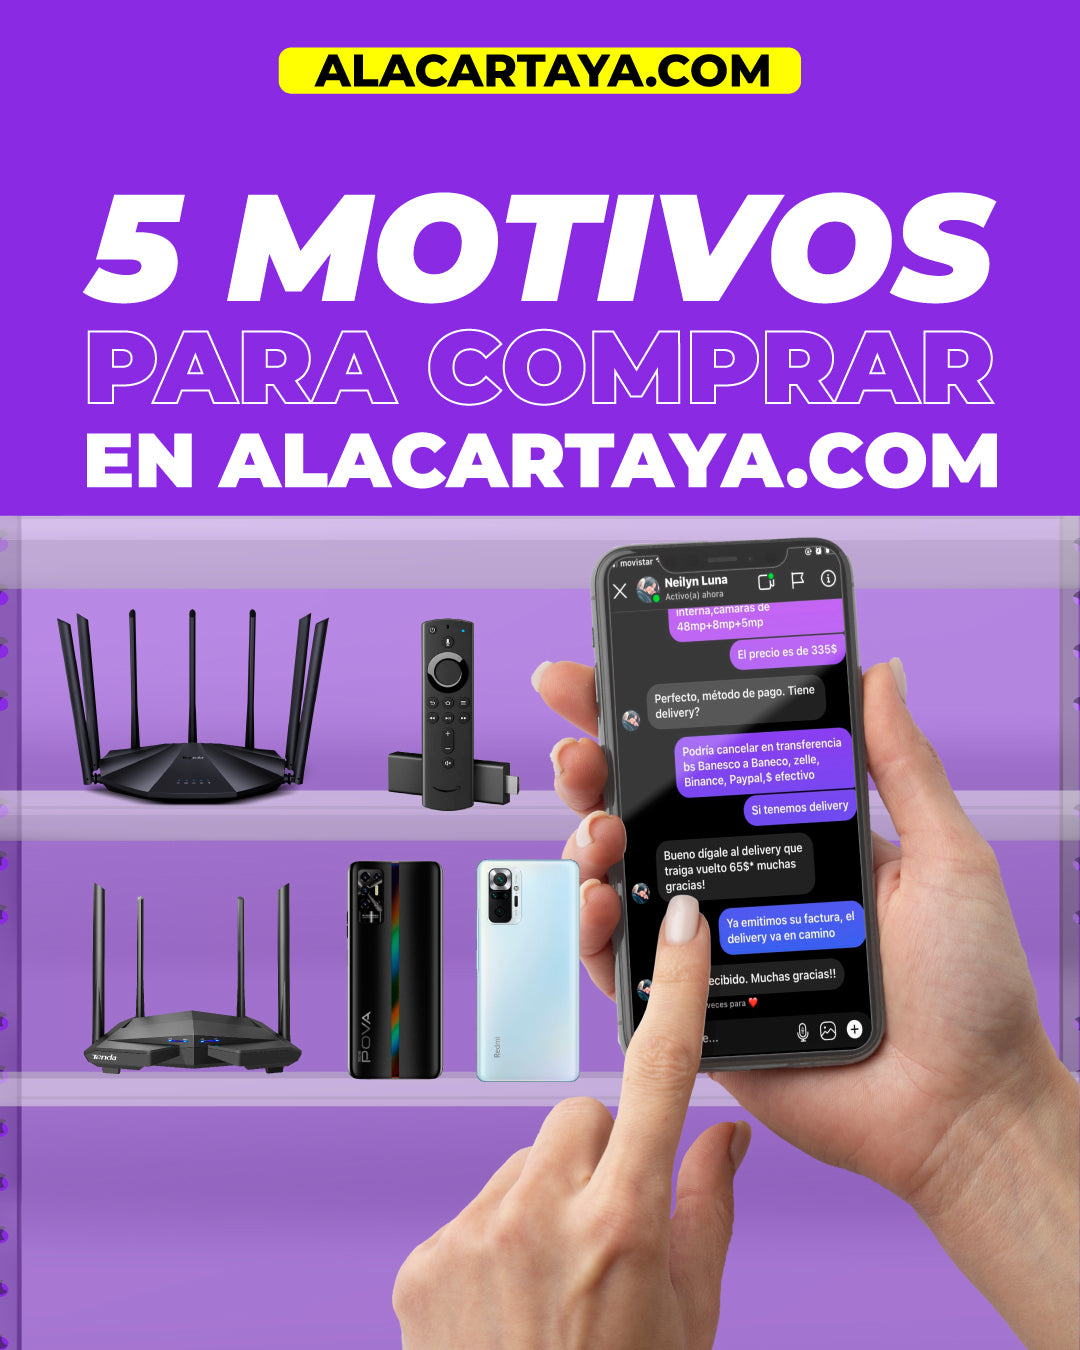 5 motivos para comprar en la tienda online alacartaya.com